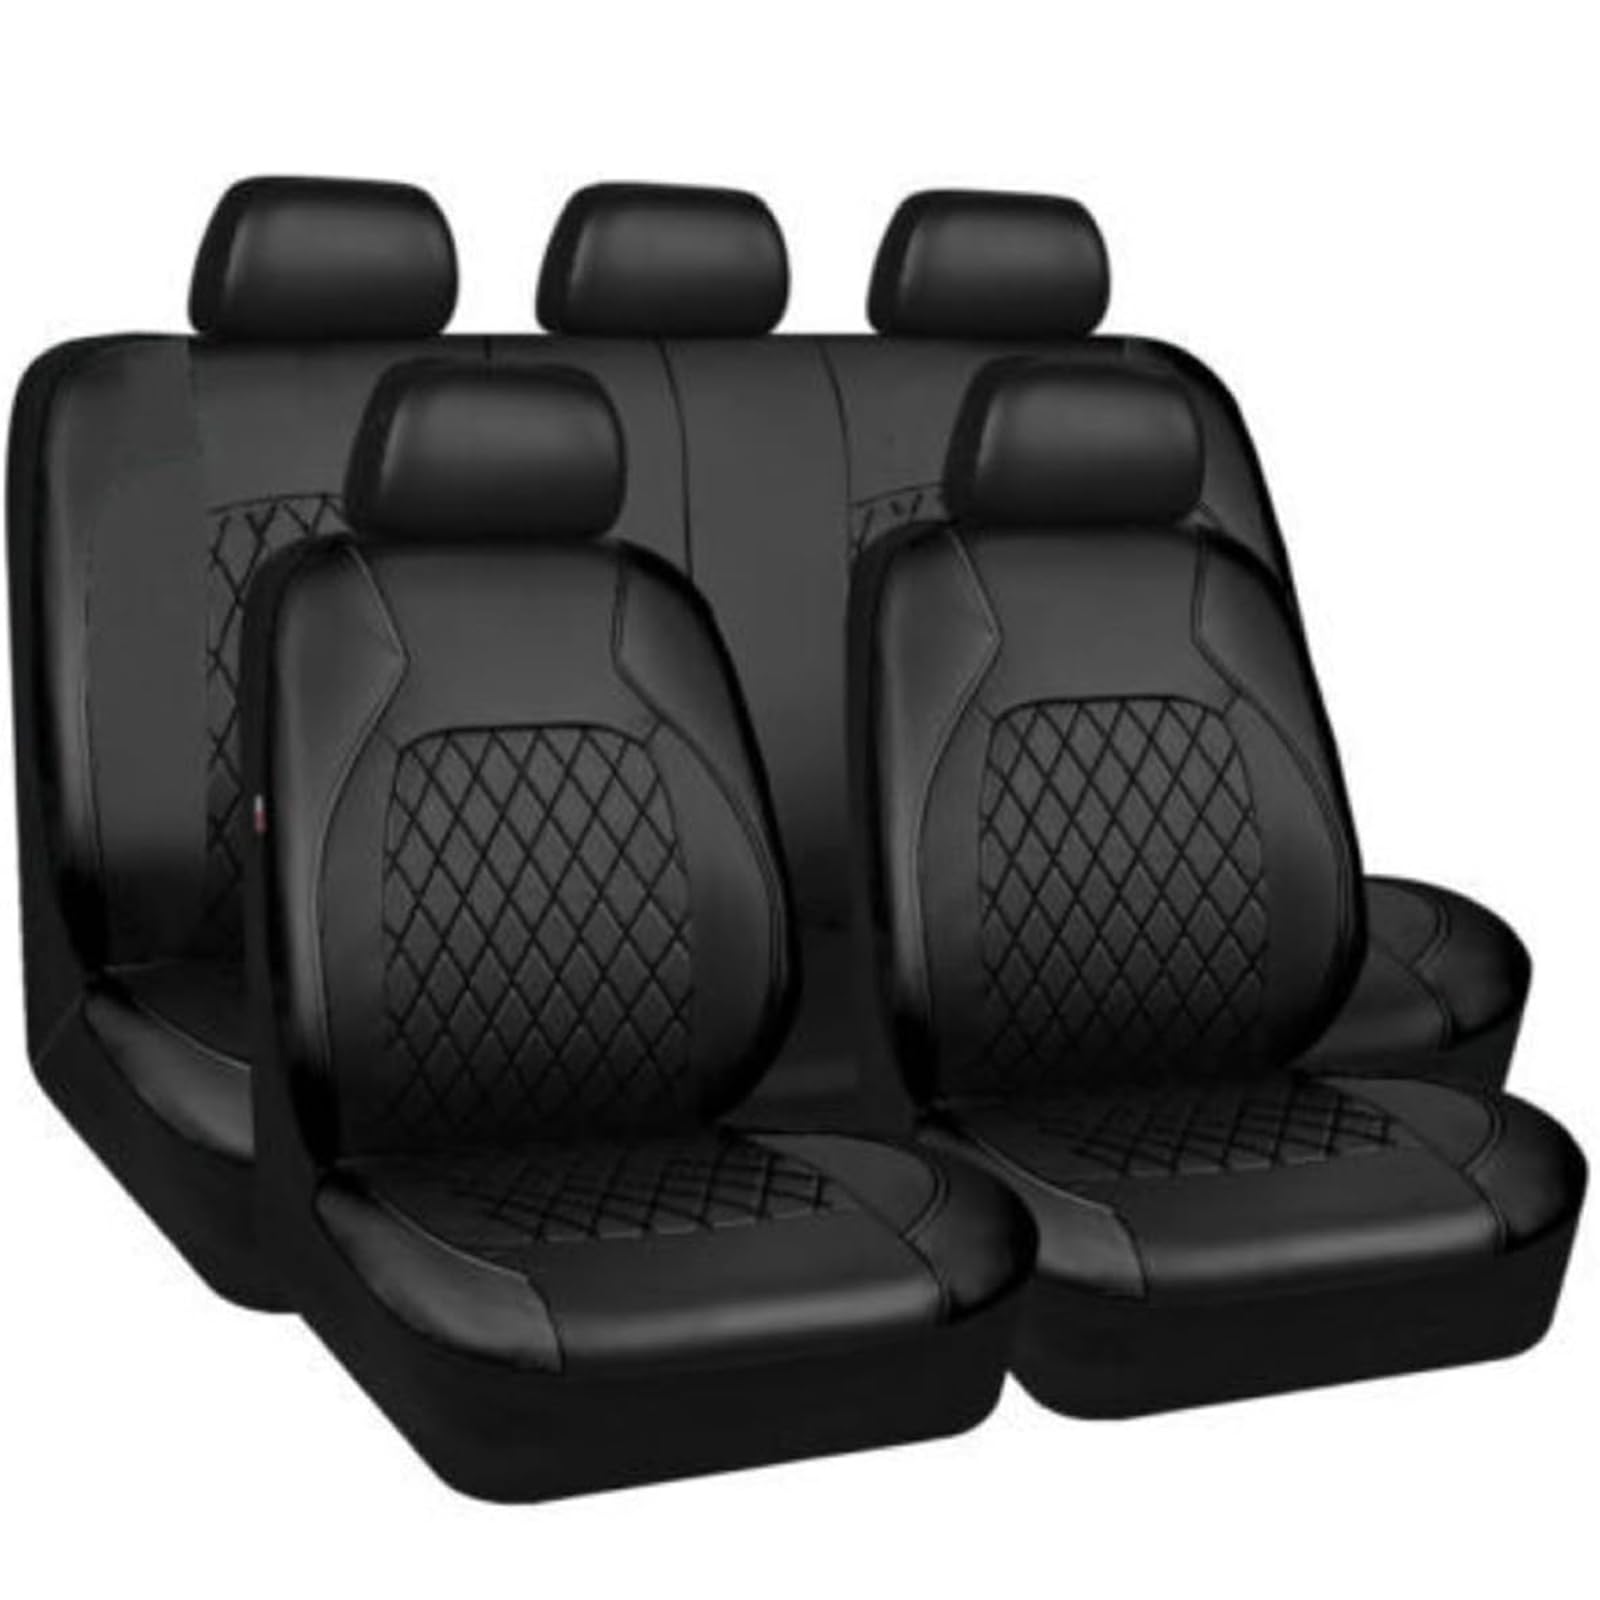 5 Sitzplätze Universal Sitzbezug Auto für BMW Serie 5 Series 5er Touring E39/5 E34 Touring E34/5 Wagon Estate Autositzbezug Sitzbezüge Vorne Und Hinten Sitzschoner,A von SNXLW